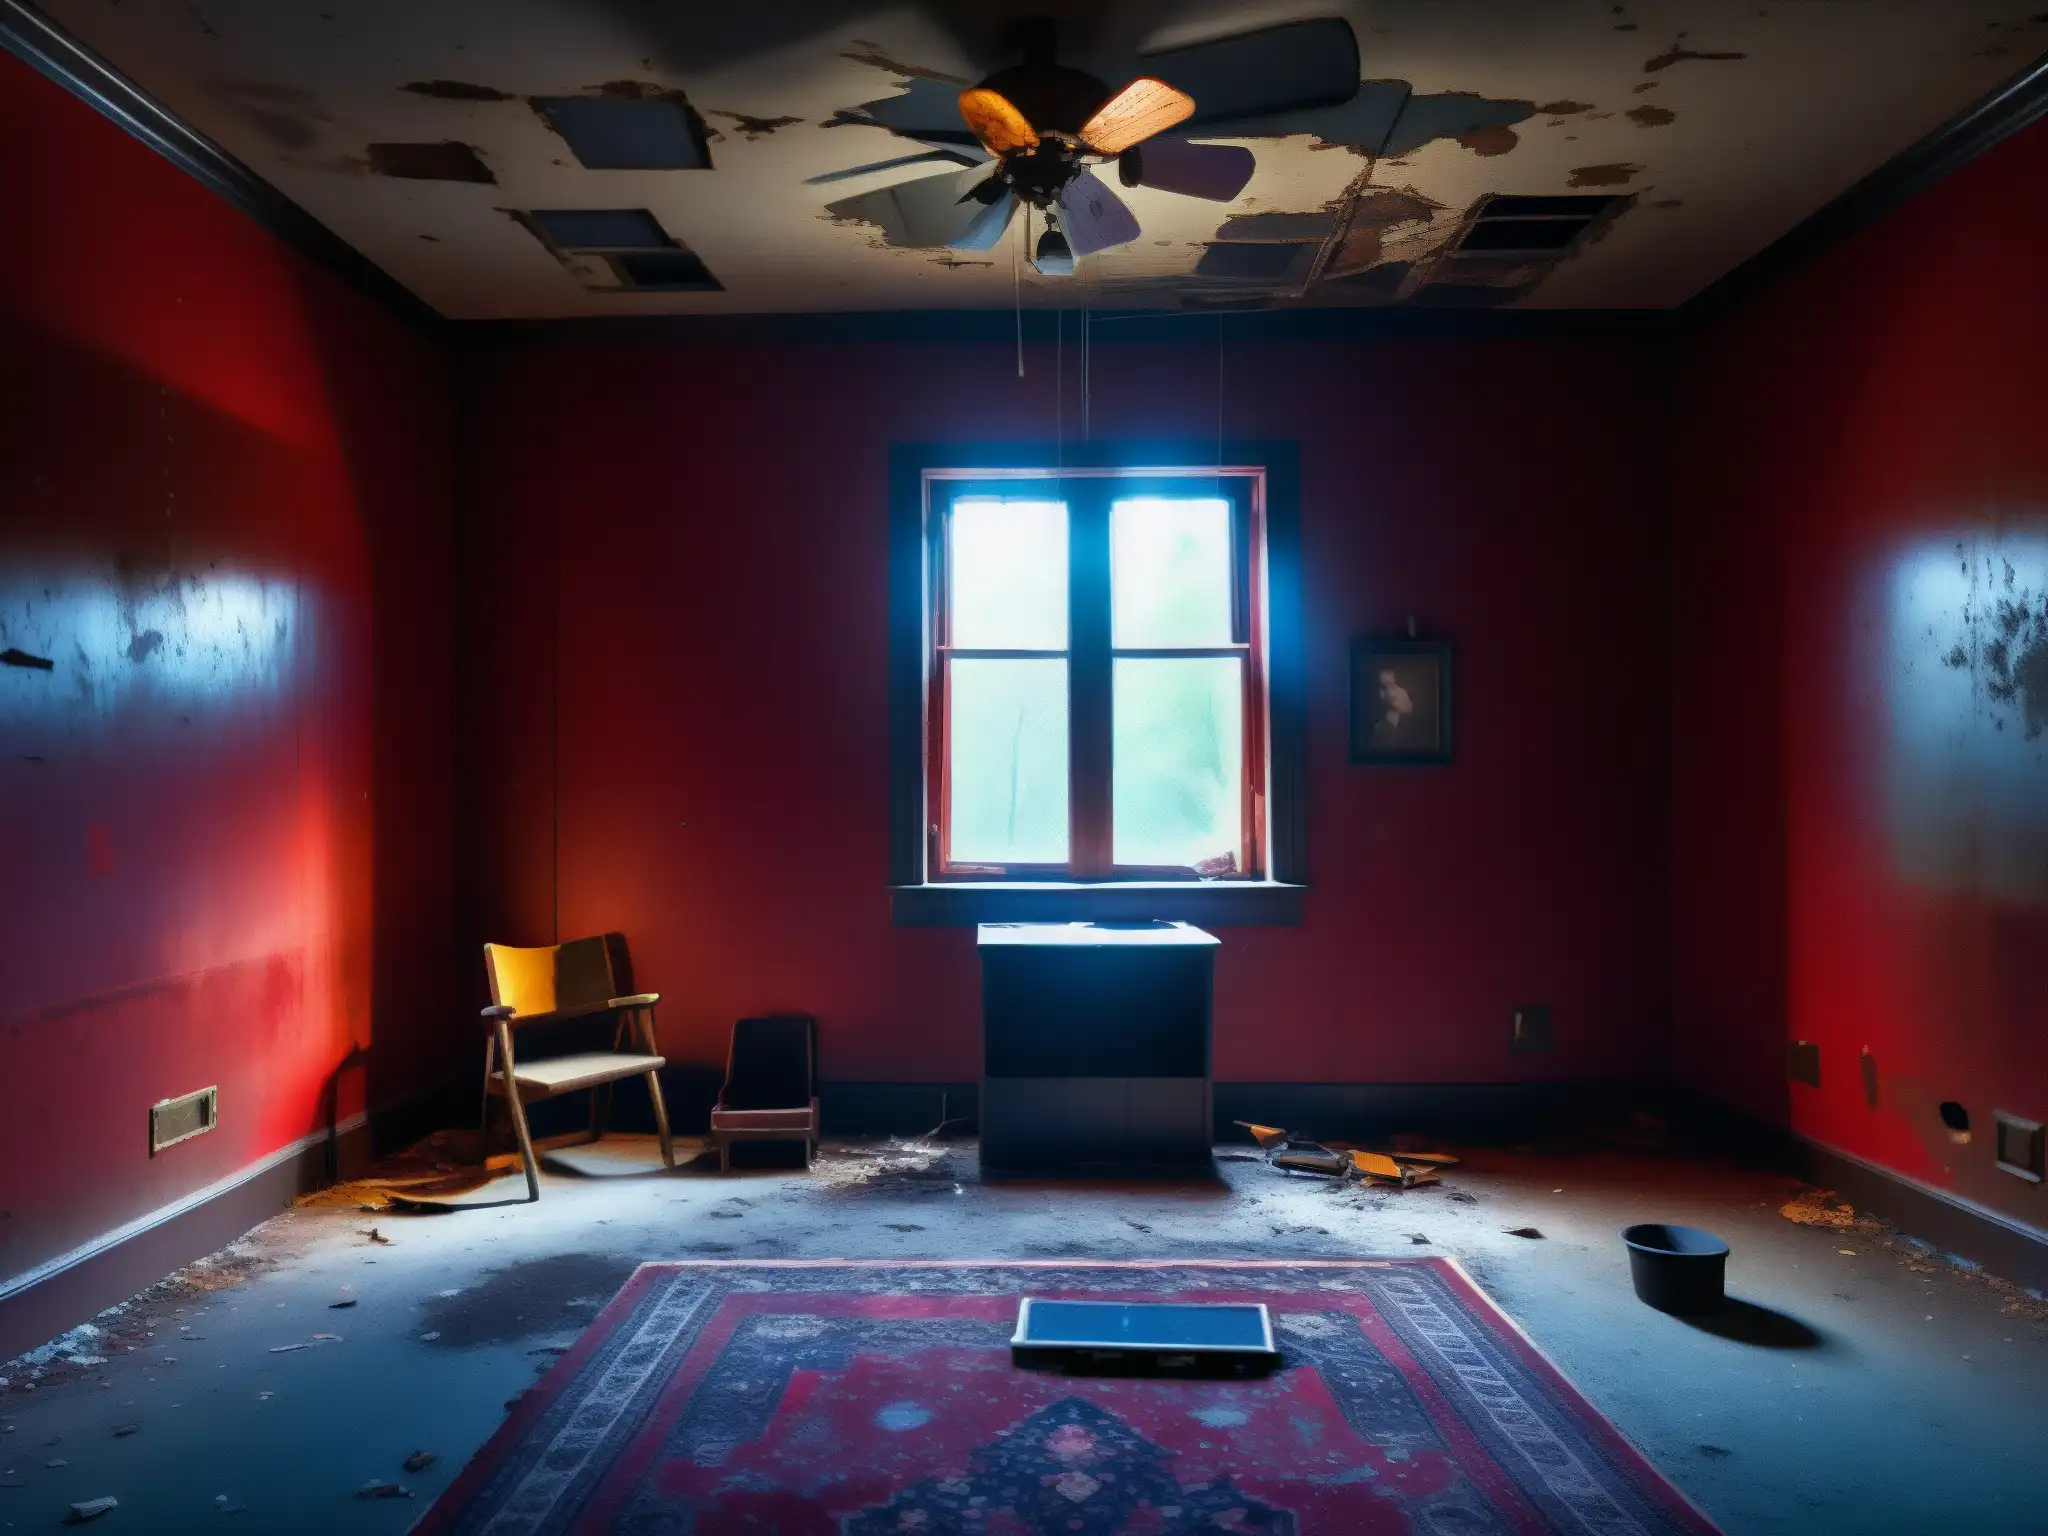 Una habitación abandonada con pintura roja descascarada, evocando el origen y misterio del mito de la habitación roja, con muebles viejos y un aura enigmática